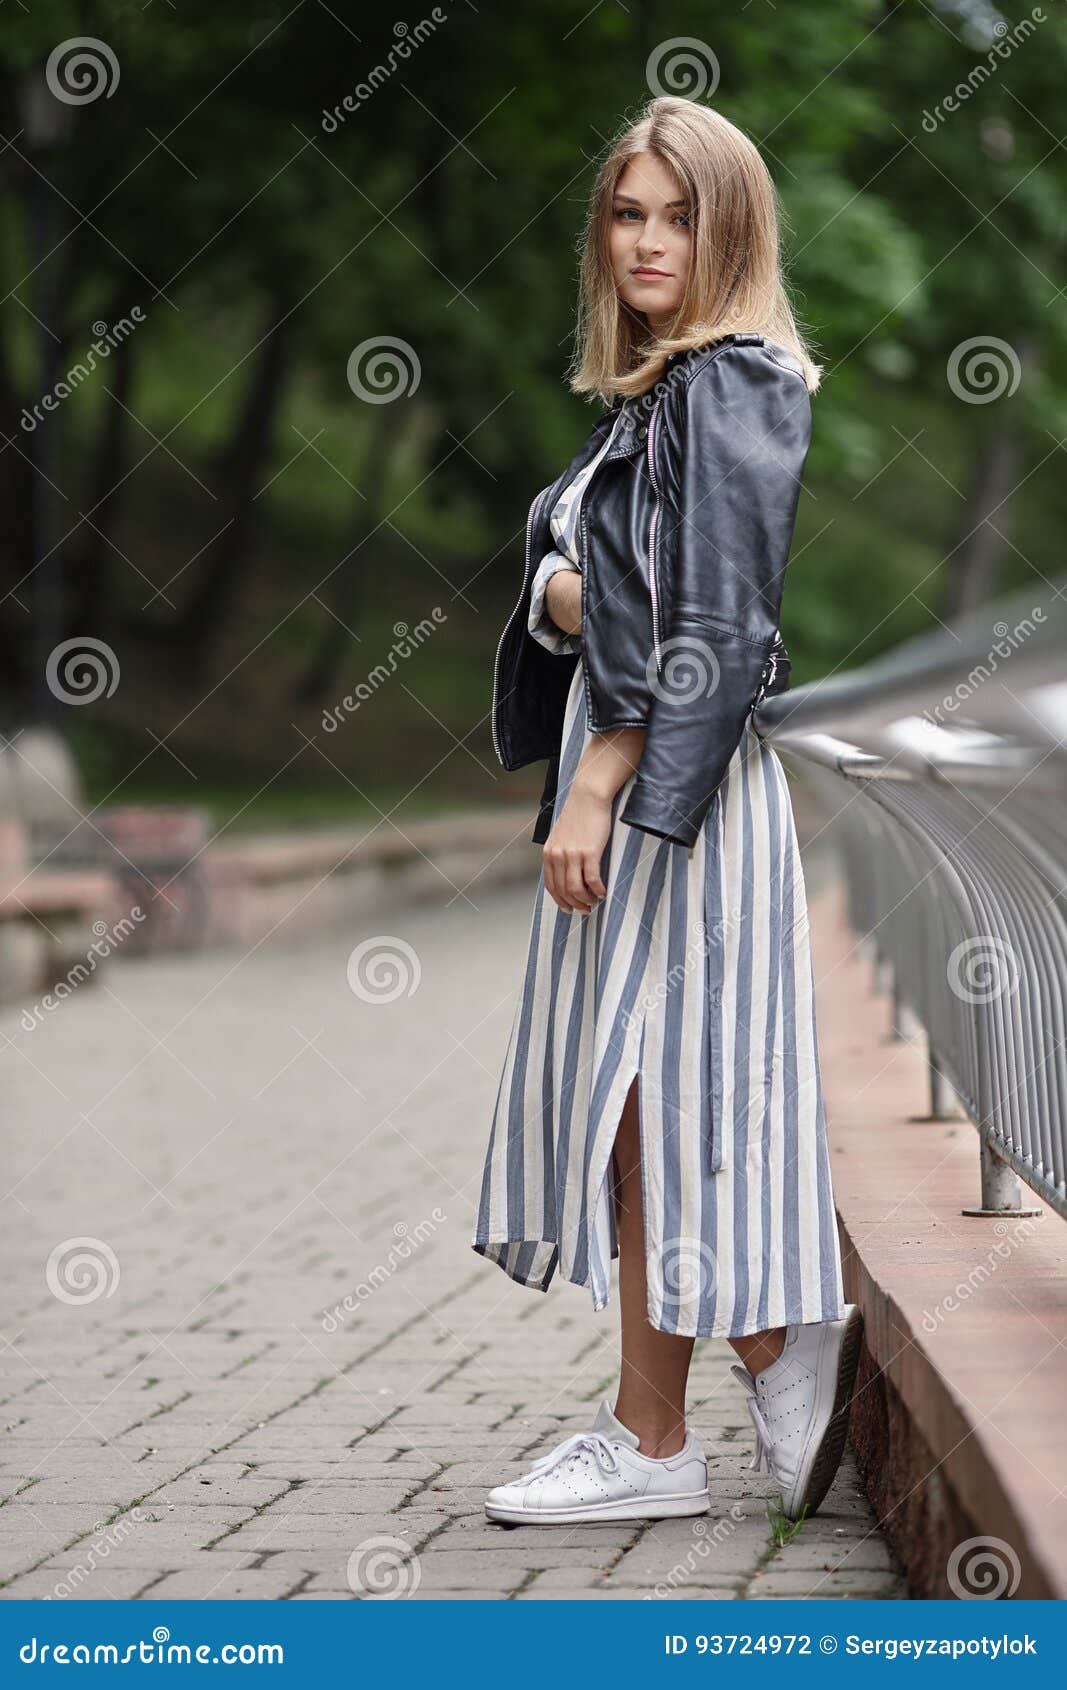 Women's Stylish Streetwear Leather Skirt